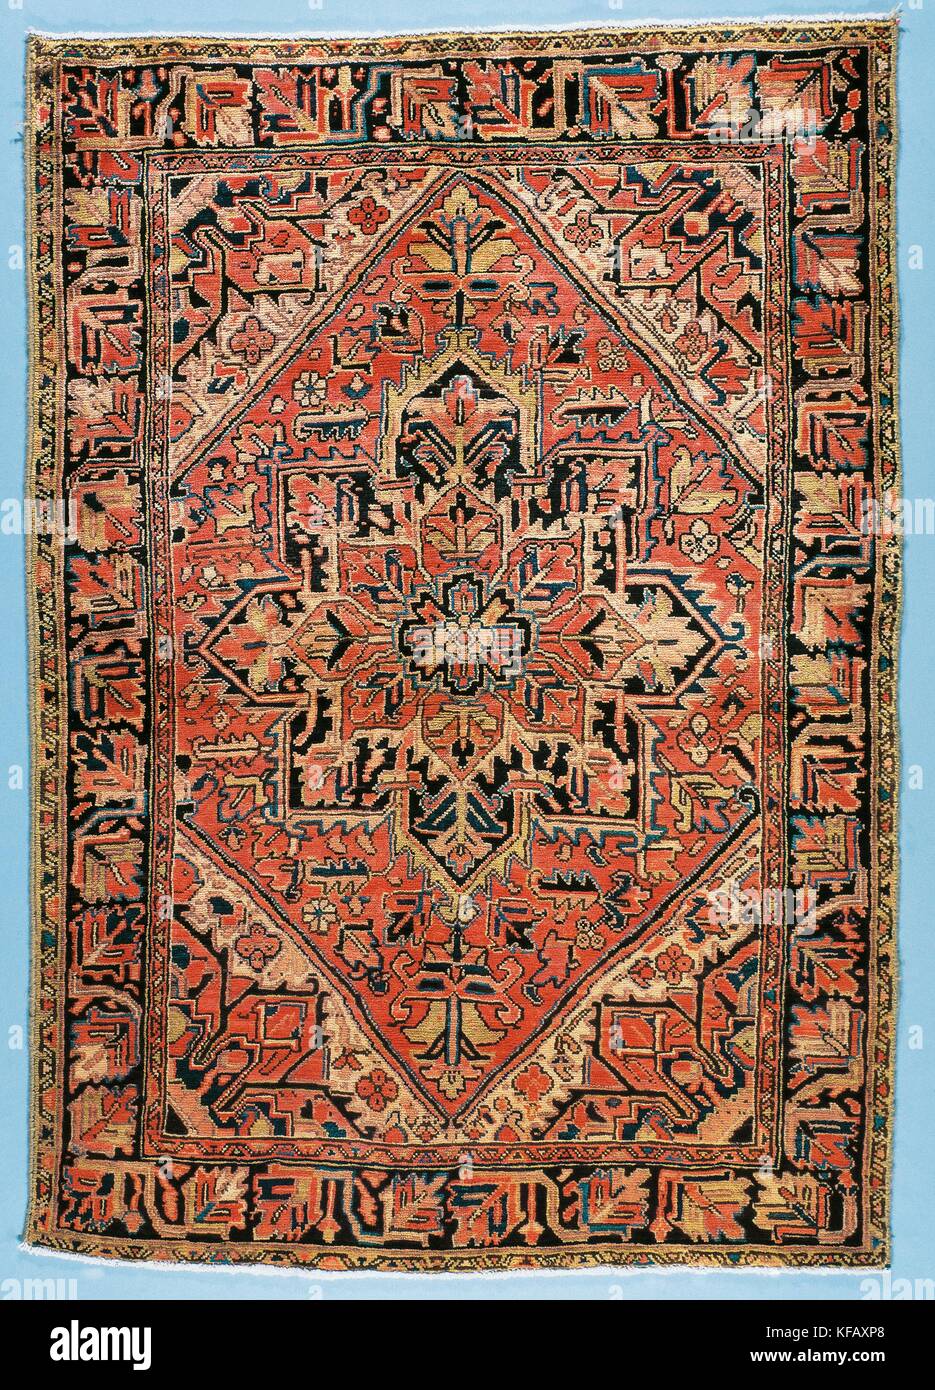 Teppiche, Iran, Heriz Teppich mit zentralem Medaillon und stilisiertem Blumenmotiv Kanton, 2.50 x 1.50 m. Stockfoto